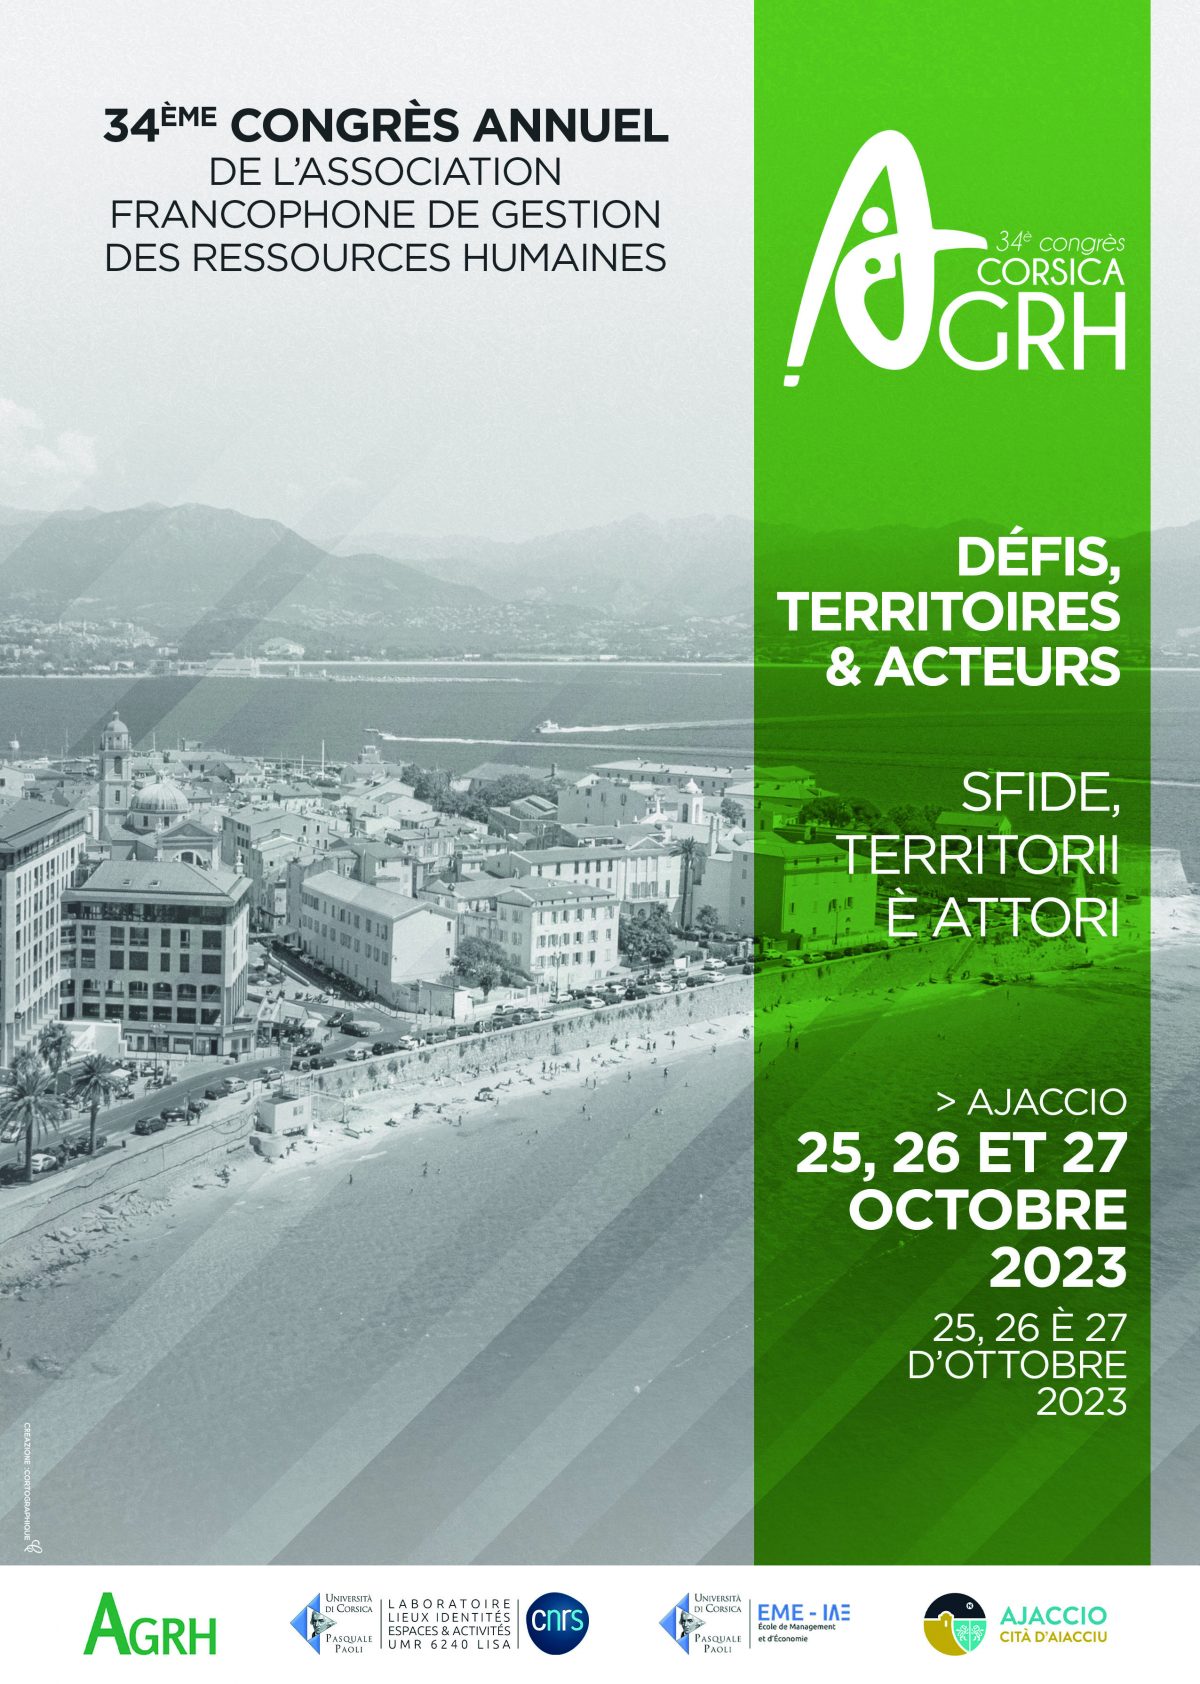 34ème Congrès annuel de l’Association Francophone de Gestion des Ressources Humaines